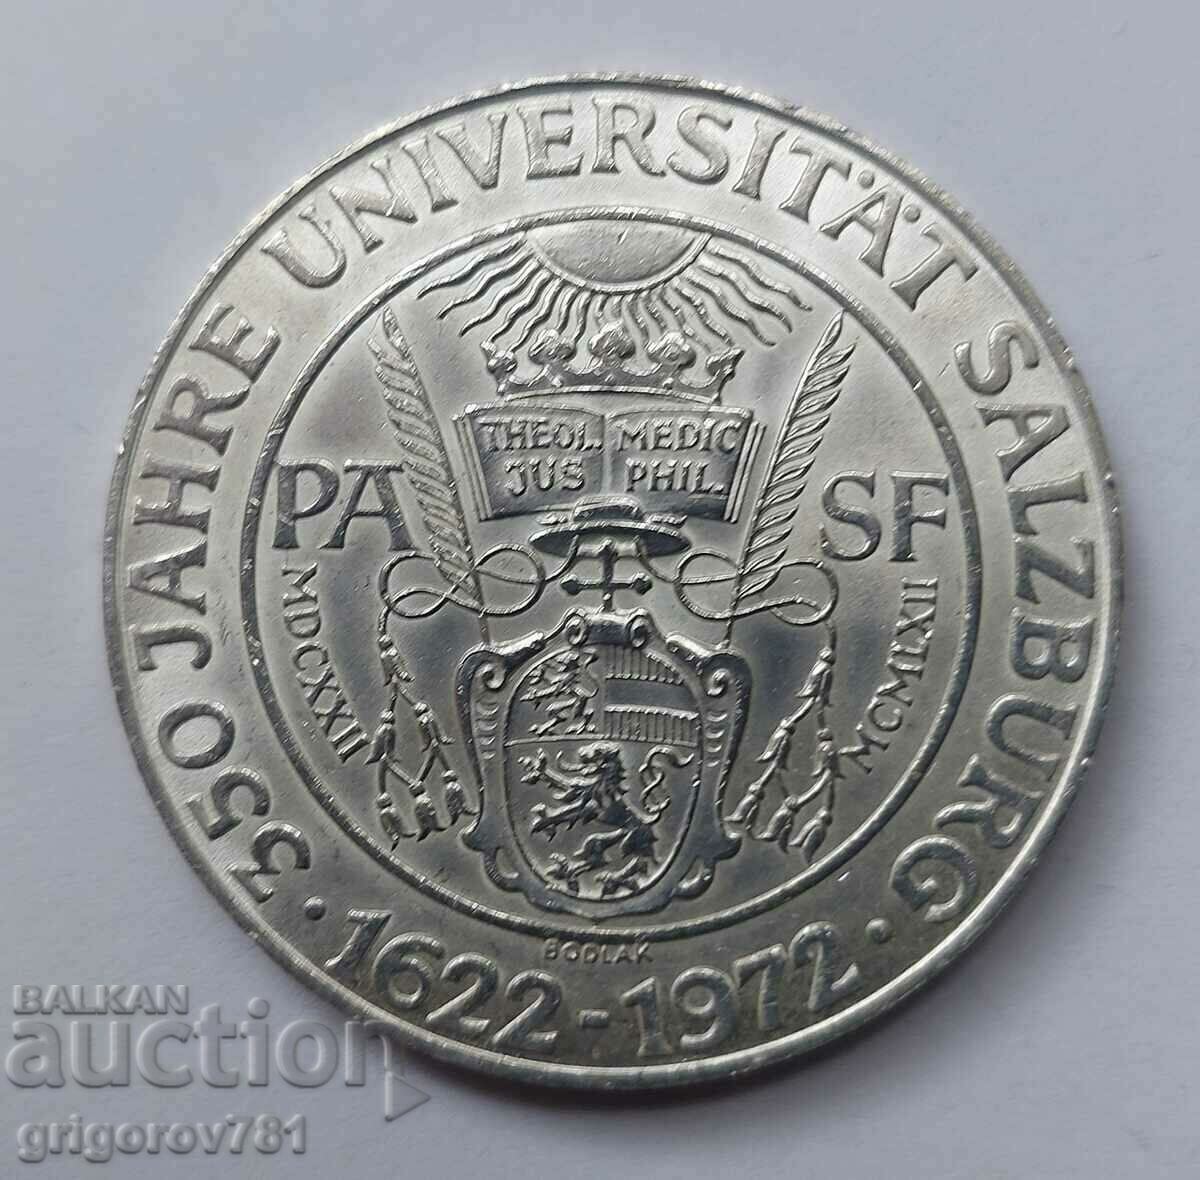 50 Shilling Silver Αυστρία 1972 - Ασημένιο νόμισμα #4